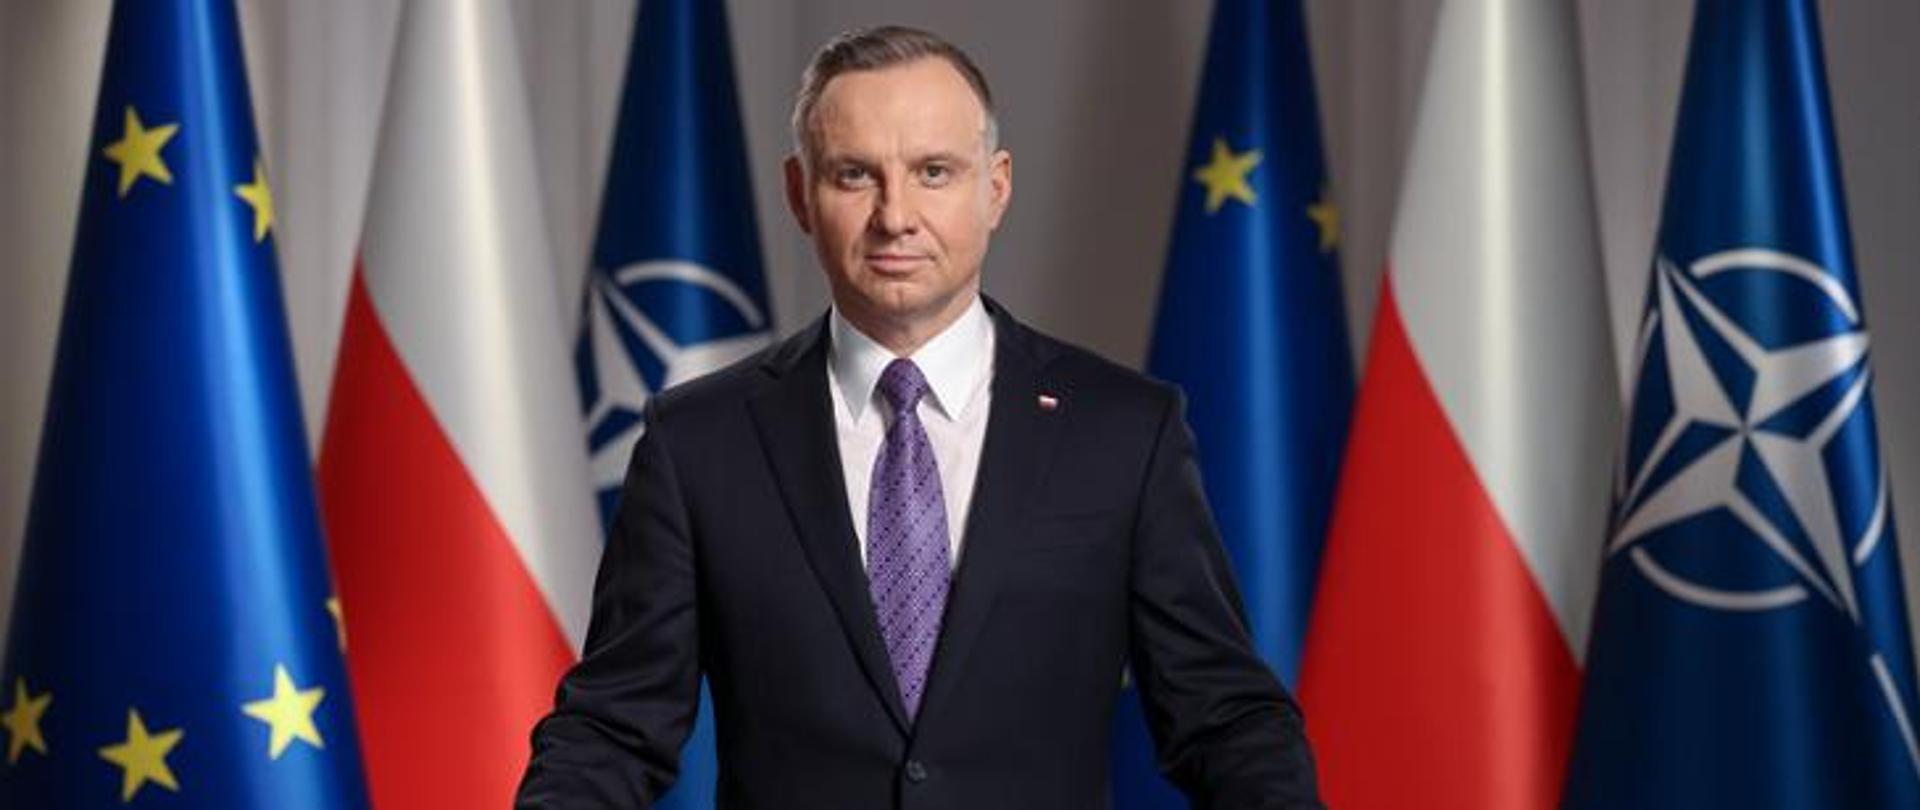 Discorso del Presidente della Repubblica di Polonia Andrzej Duda rivolto  alla comunità internazionale - Polonia in Italia - Portal Gov.pl